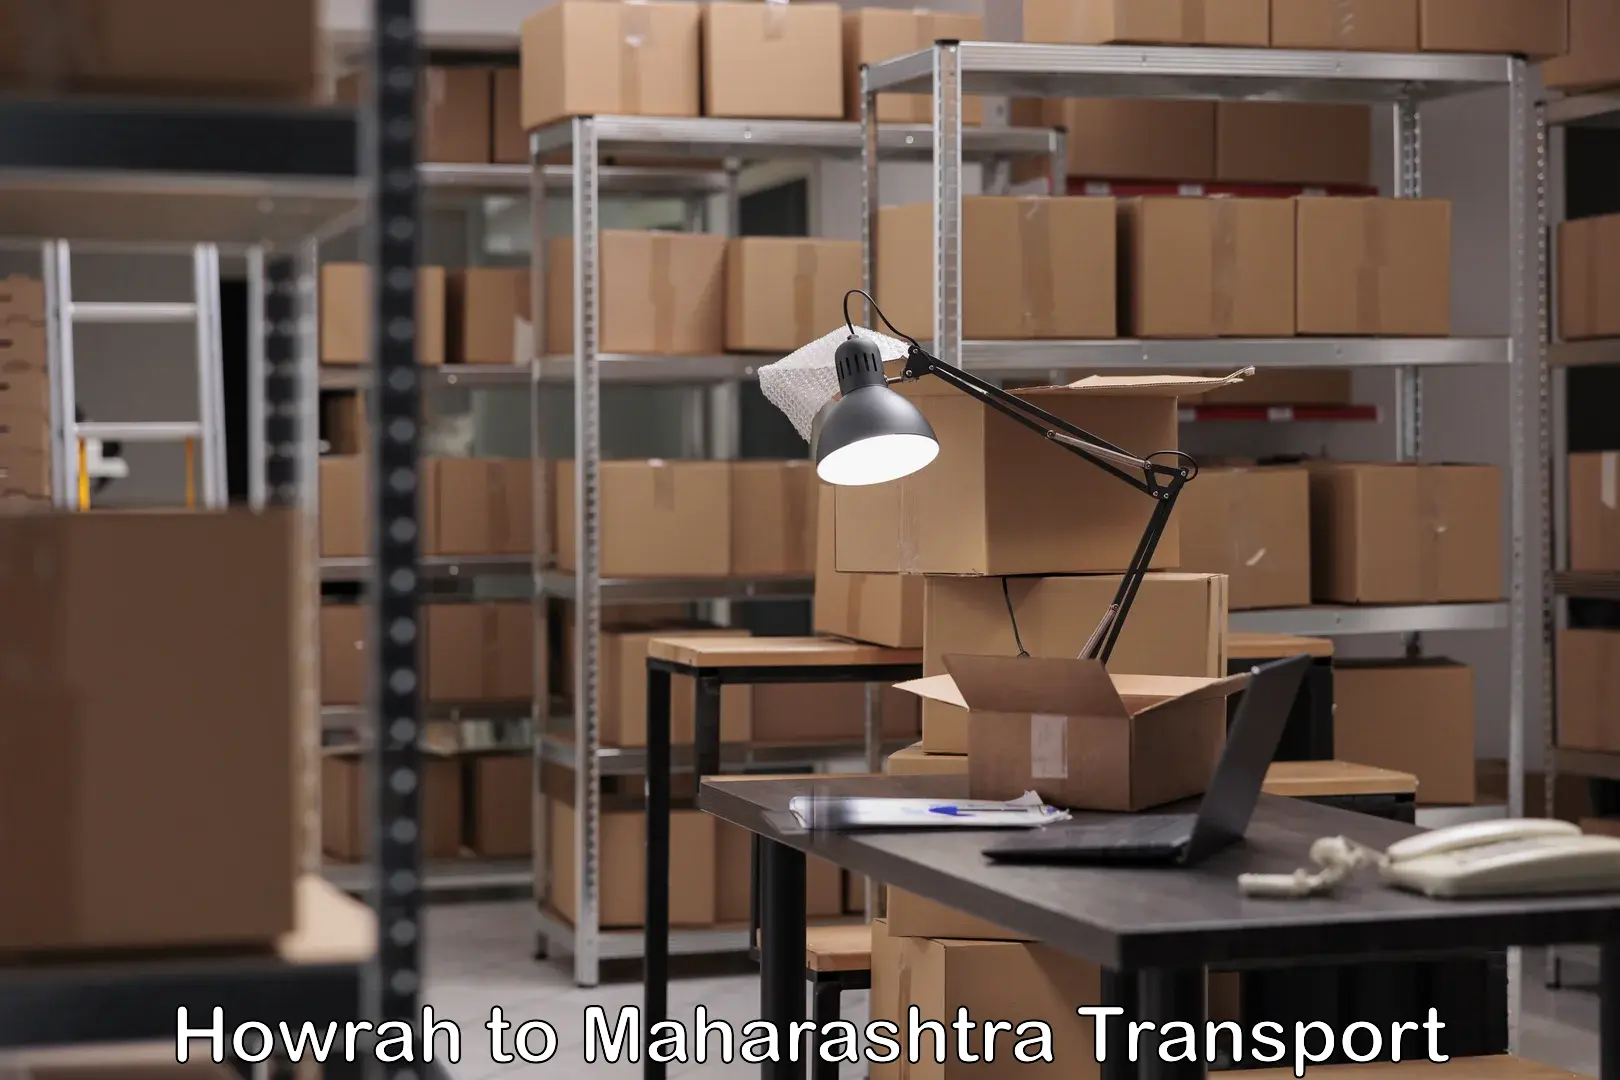 Transportation solution services Howrah to Maharashtra